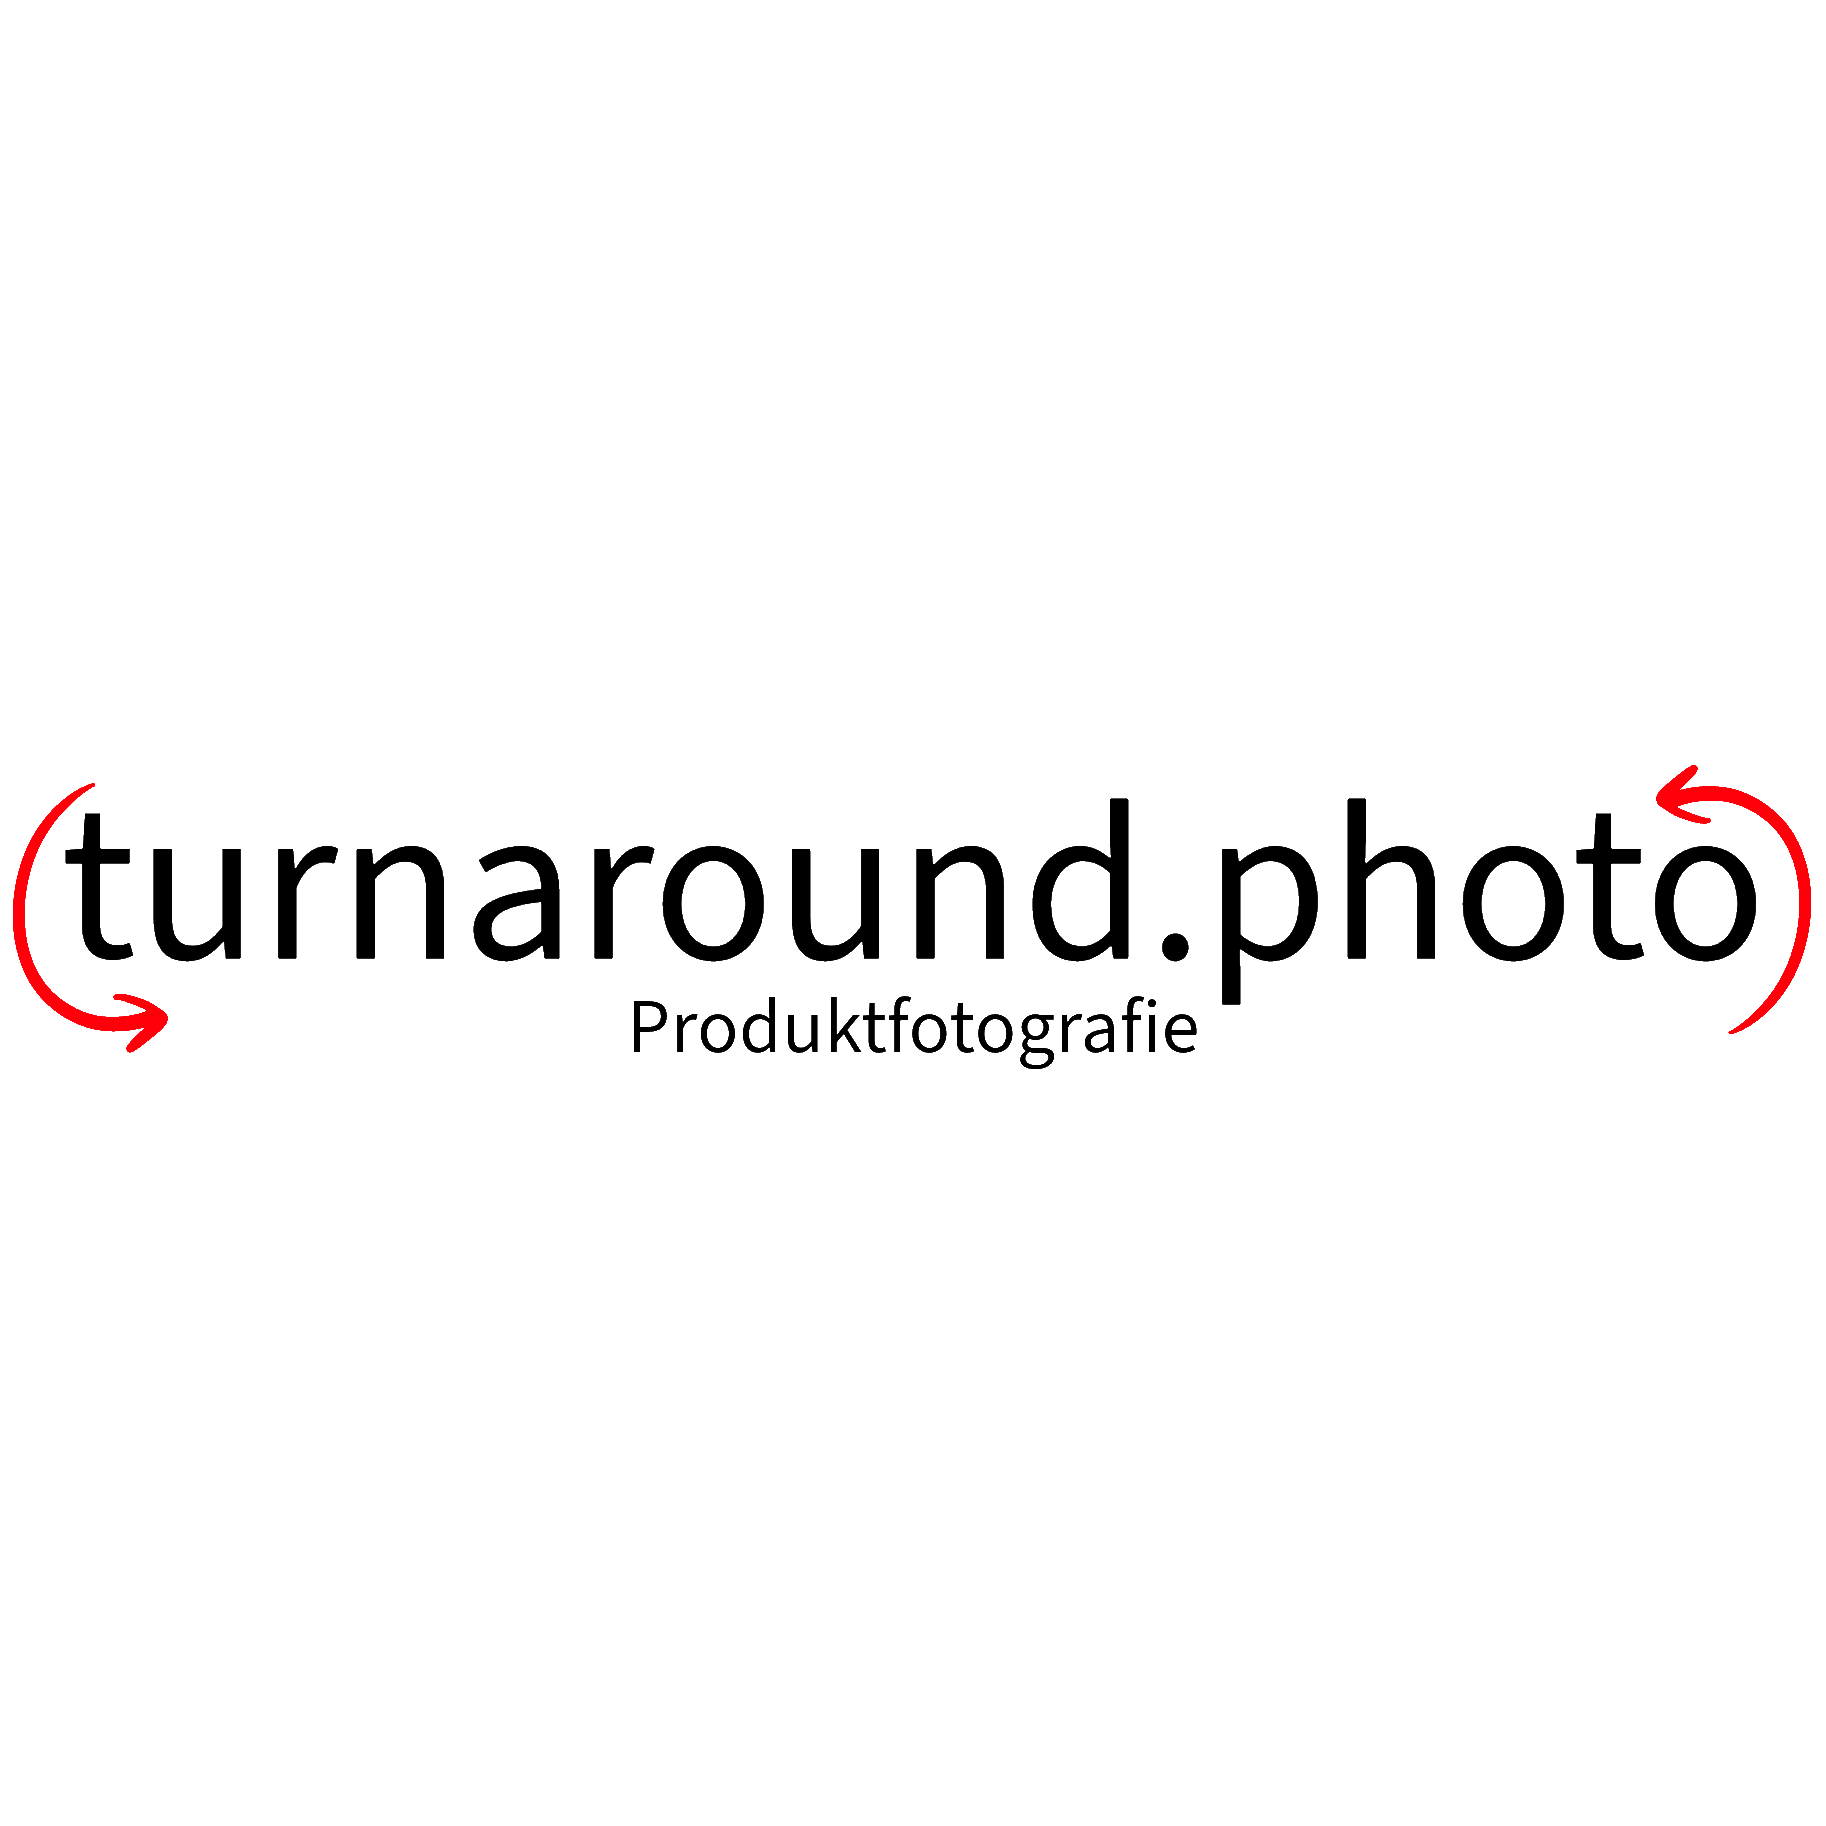 turnaround.photo in Bruckmühl an der Mangfall - Logo